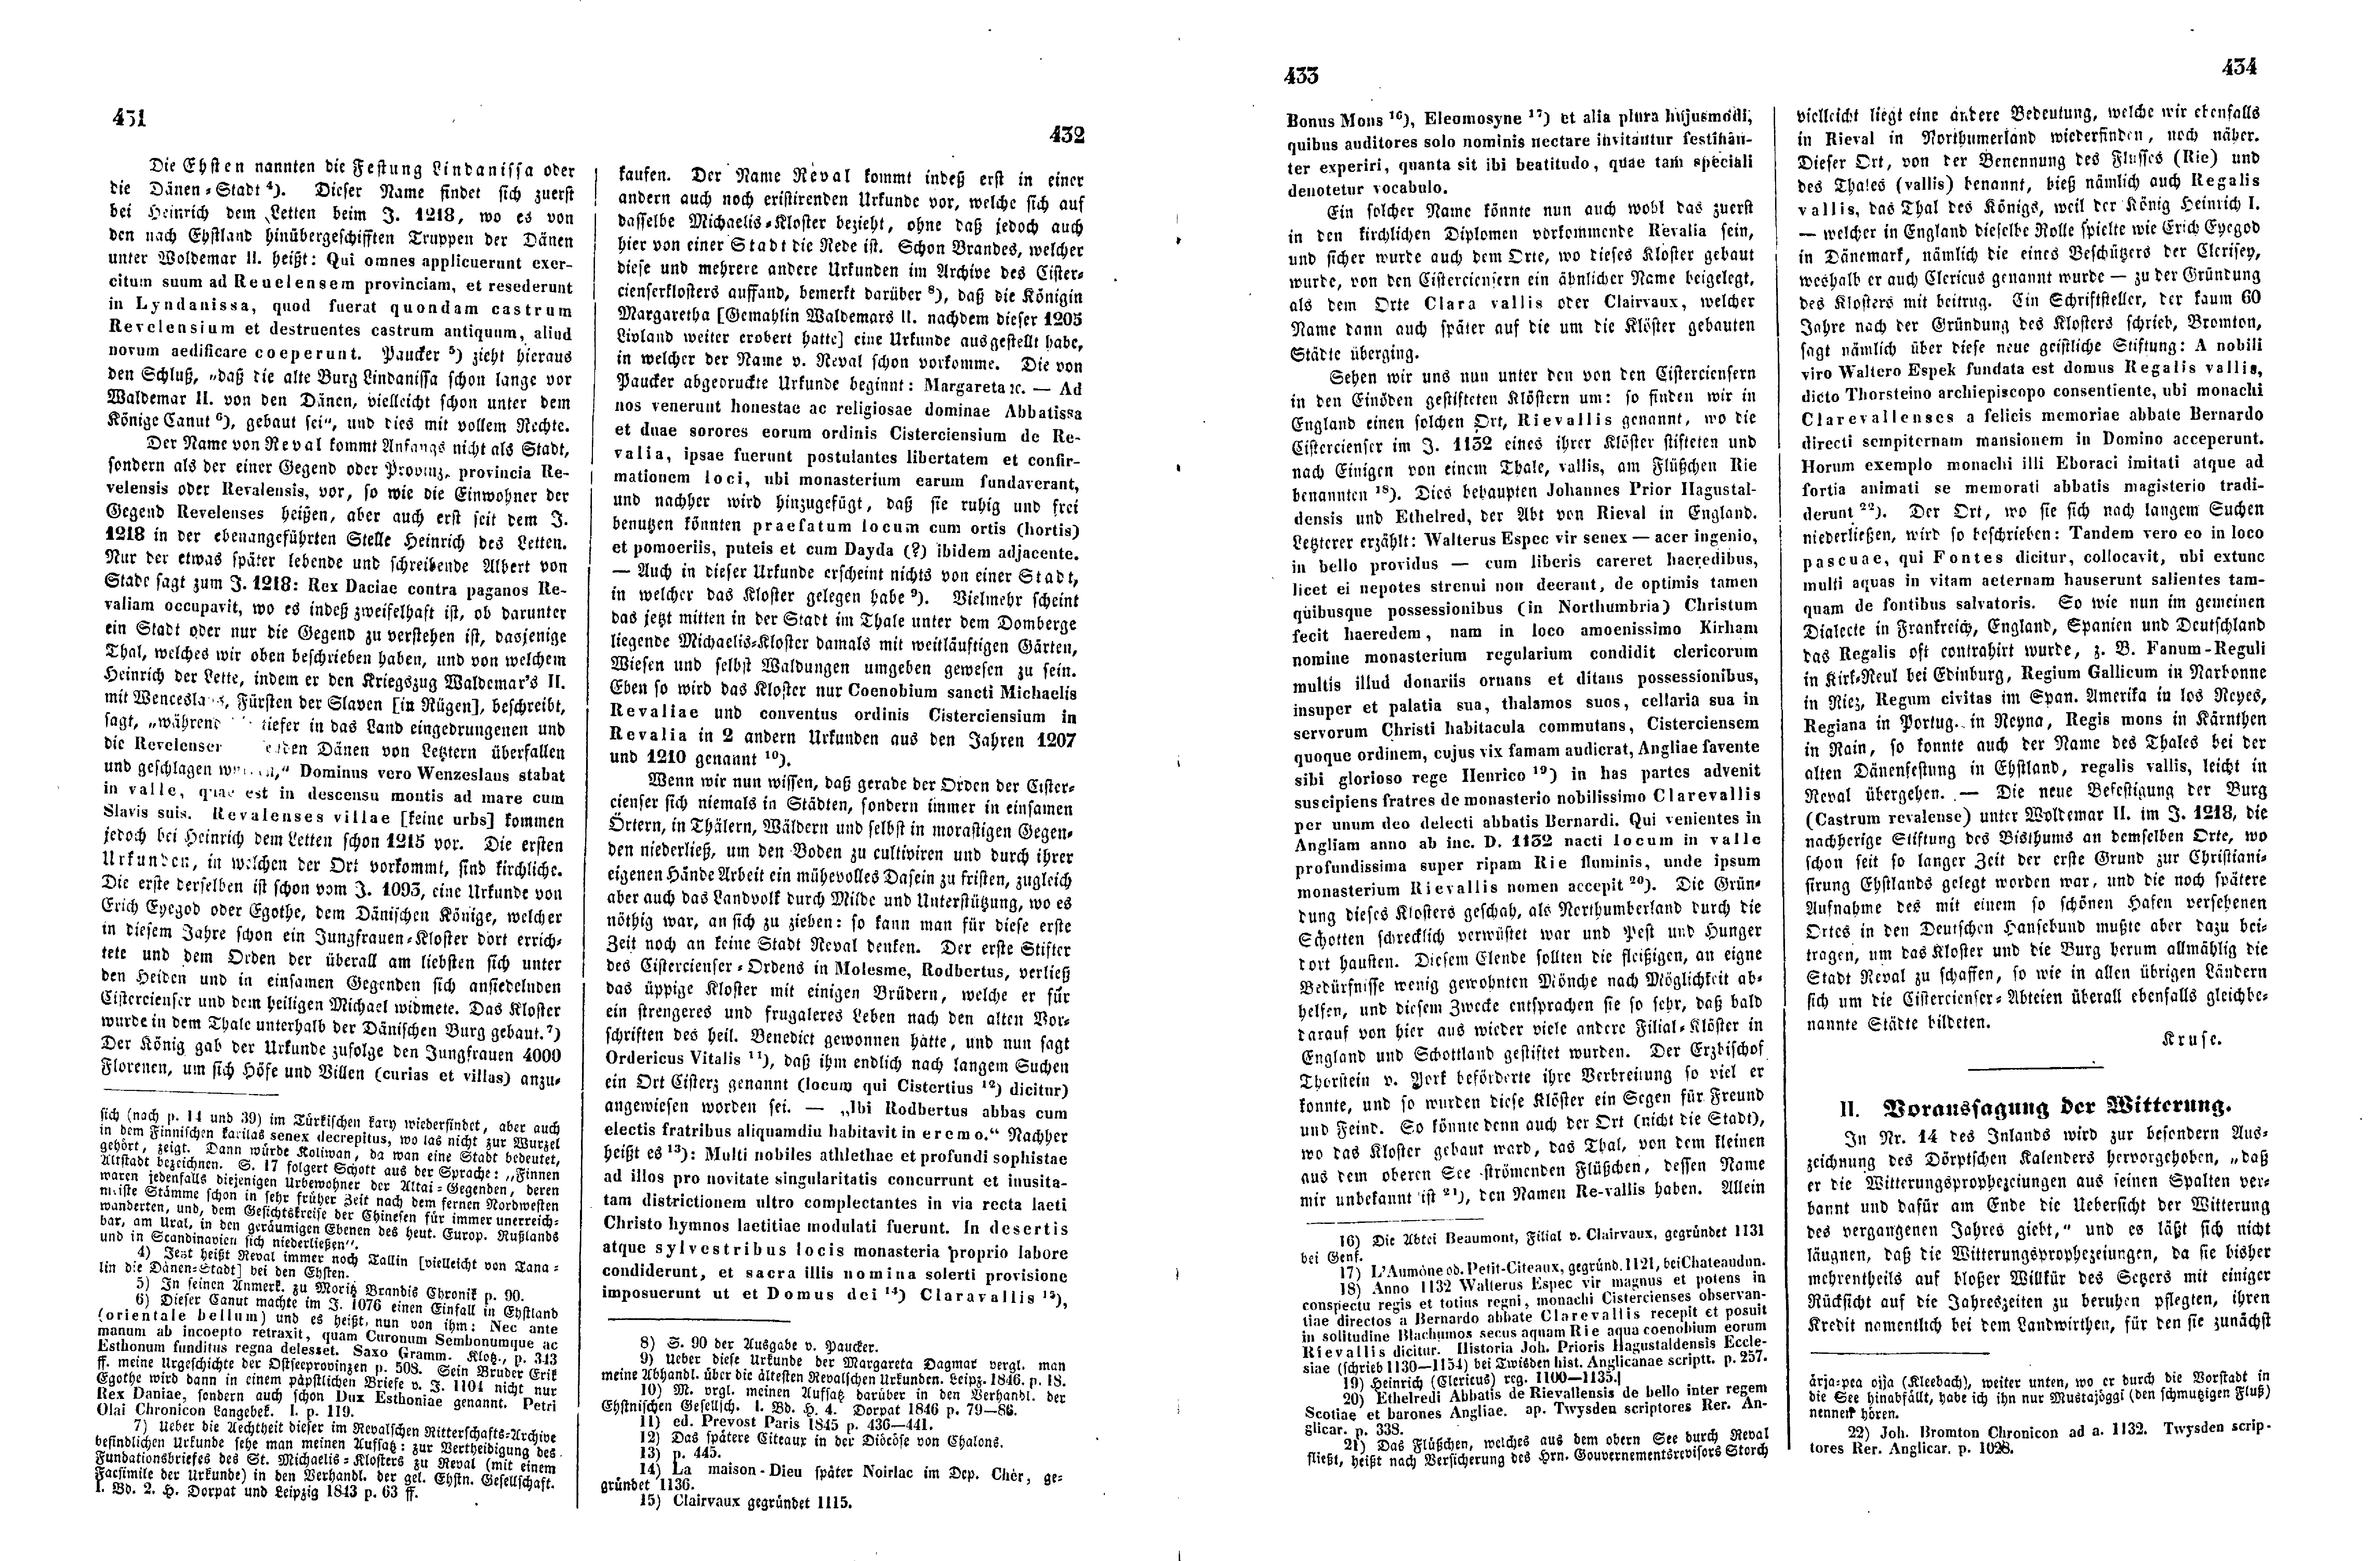 Das Inland [16] (1851) | 112. (431-434) Haupttext